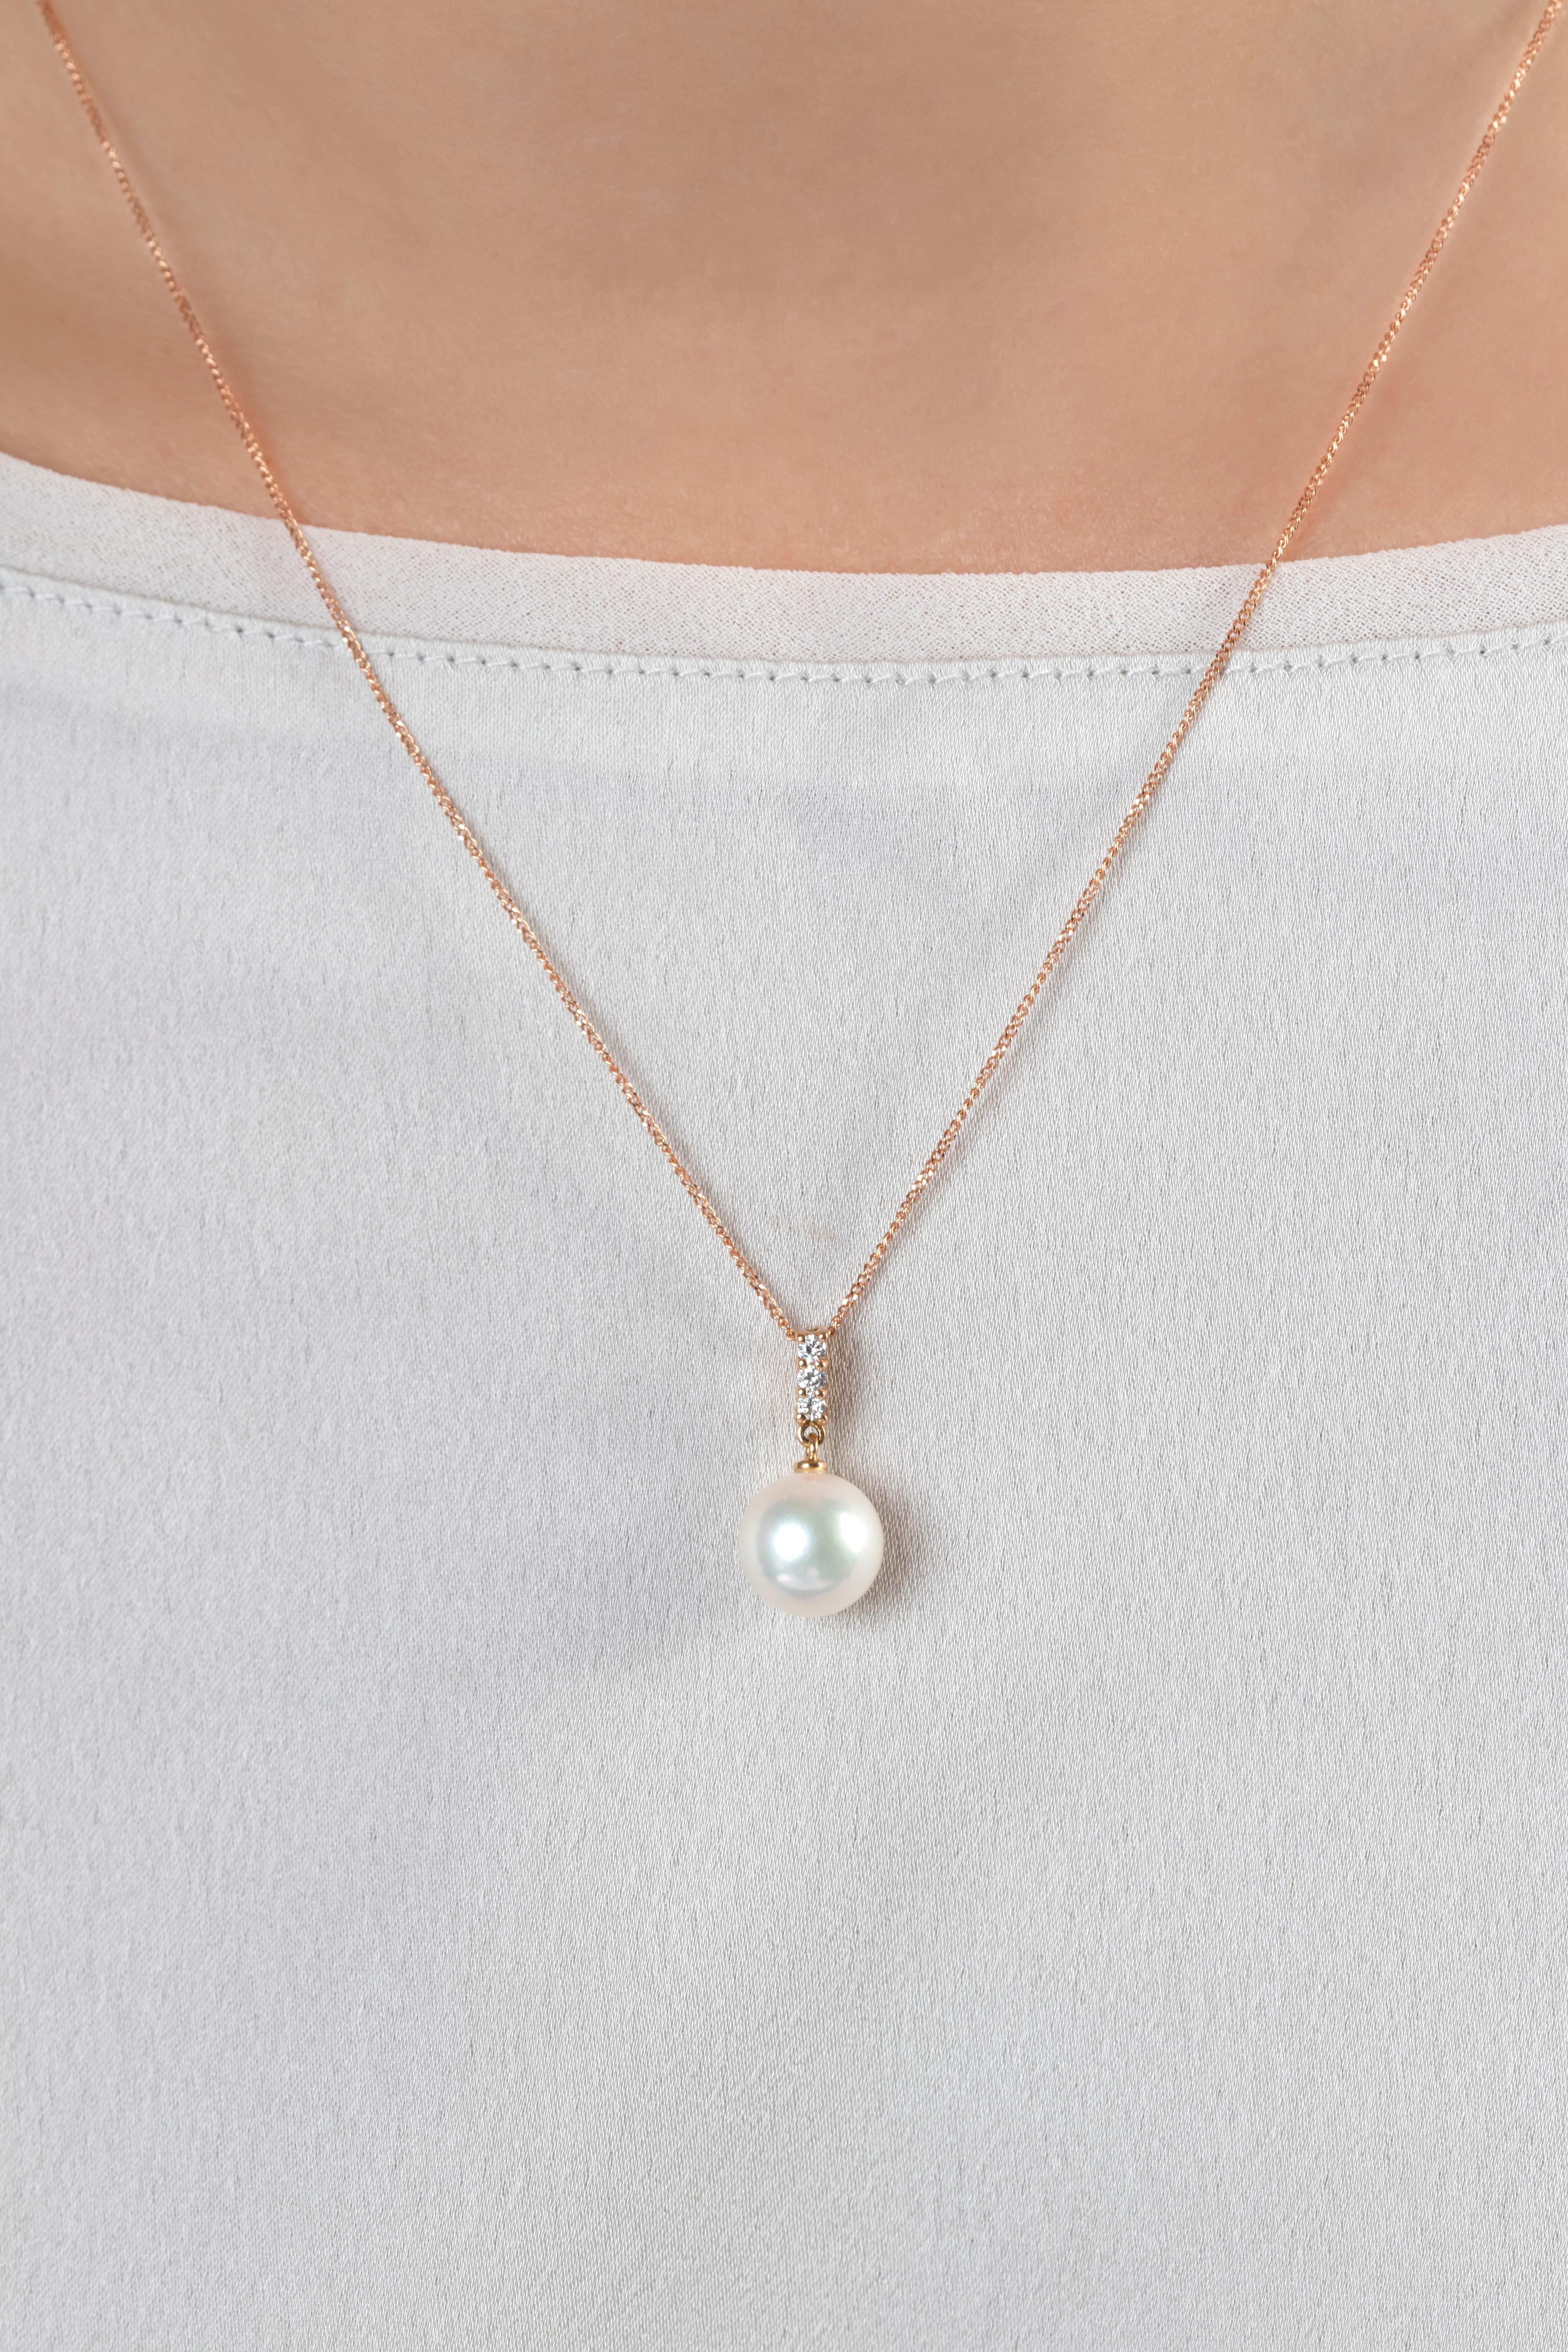 Dieser zeitlose Anhänger von Yoko London zeigt eine schimmernde Akoya-Perle unter einer zierlichen Reihe von Diamanten. Diese klassisch eleganten Ohrringe gehören in jedes Schmuckkästchen und verleihen sowohl Tages- als auch Abendlooks einen Hauch